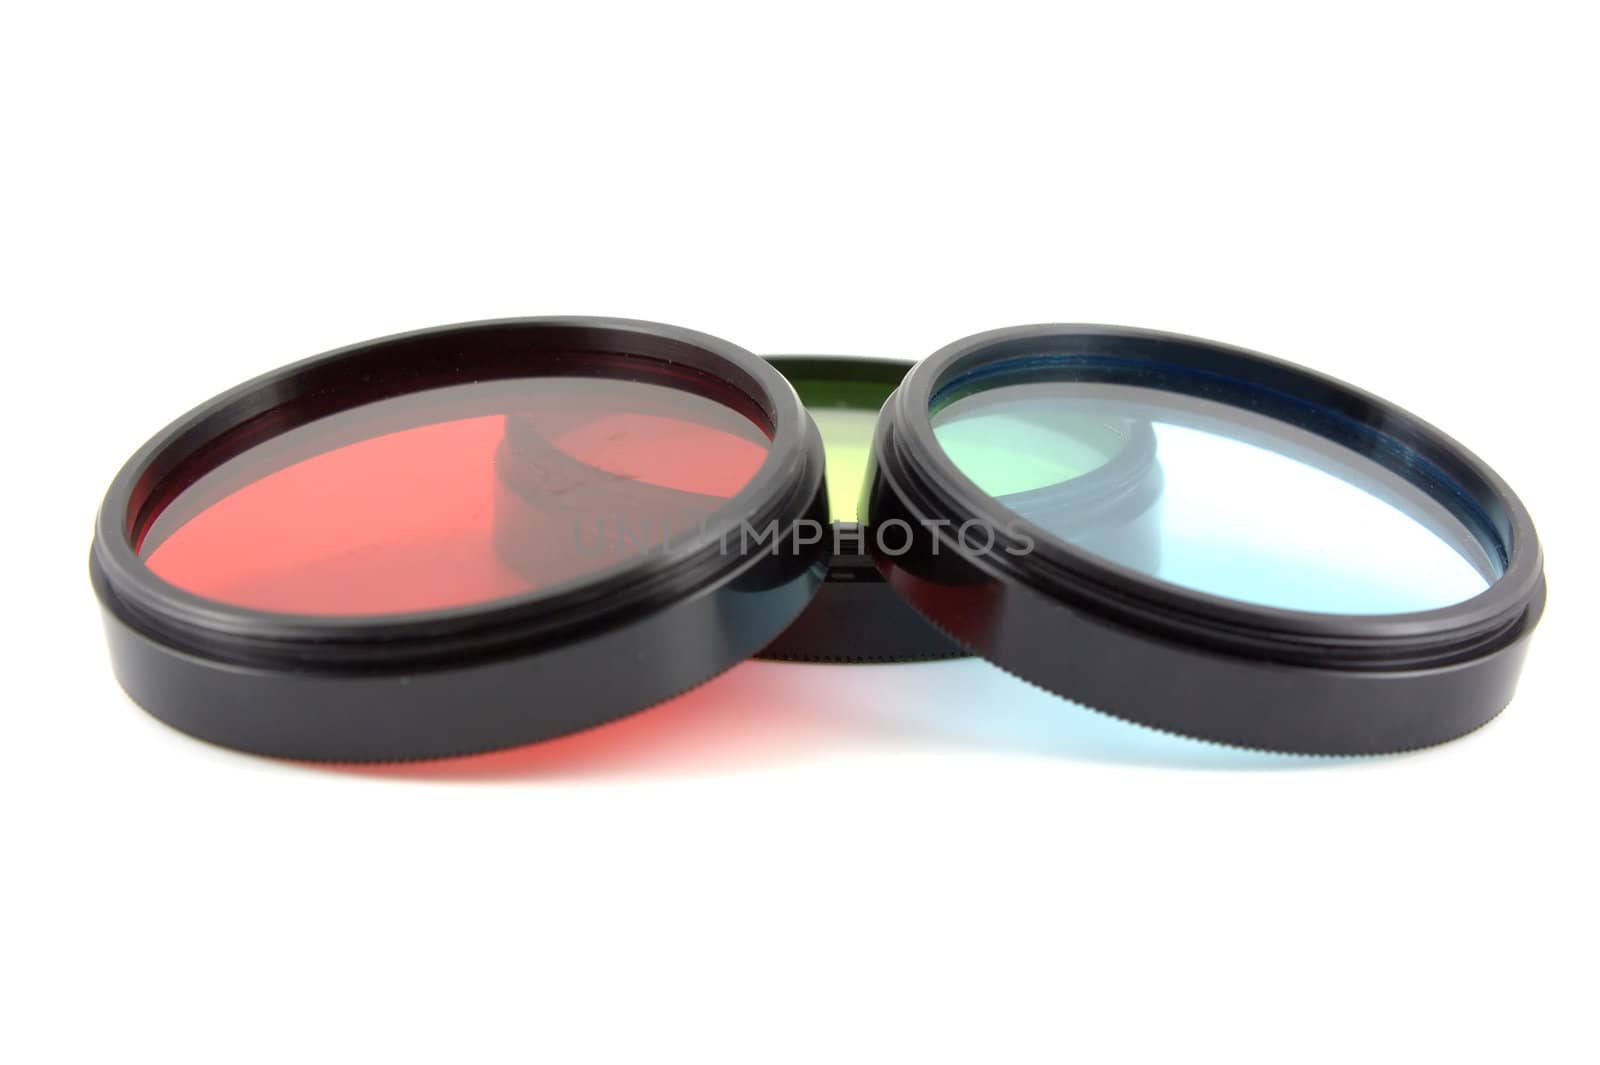 Filter for lenses over white